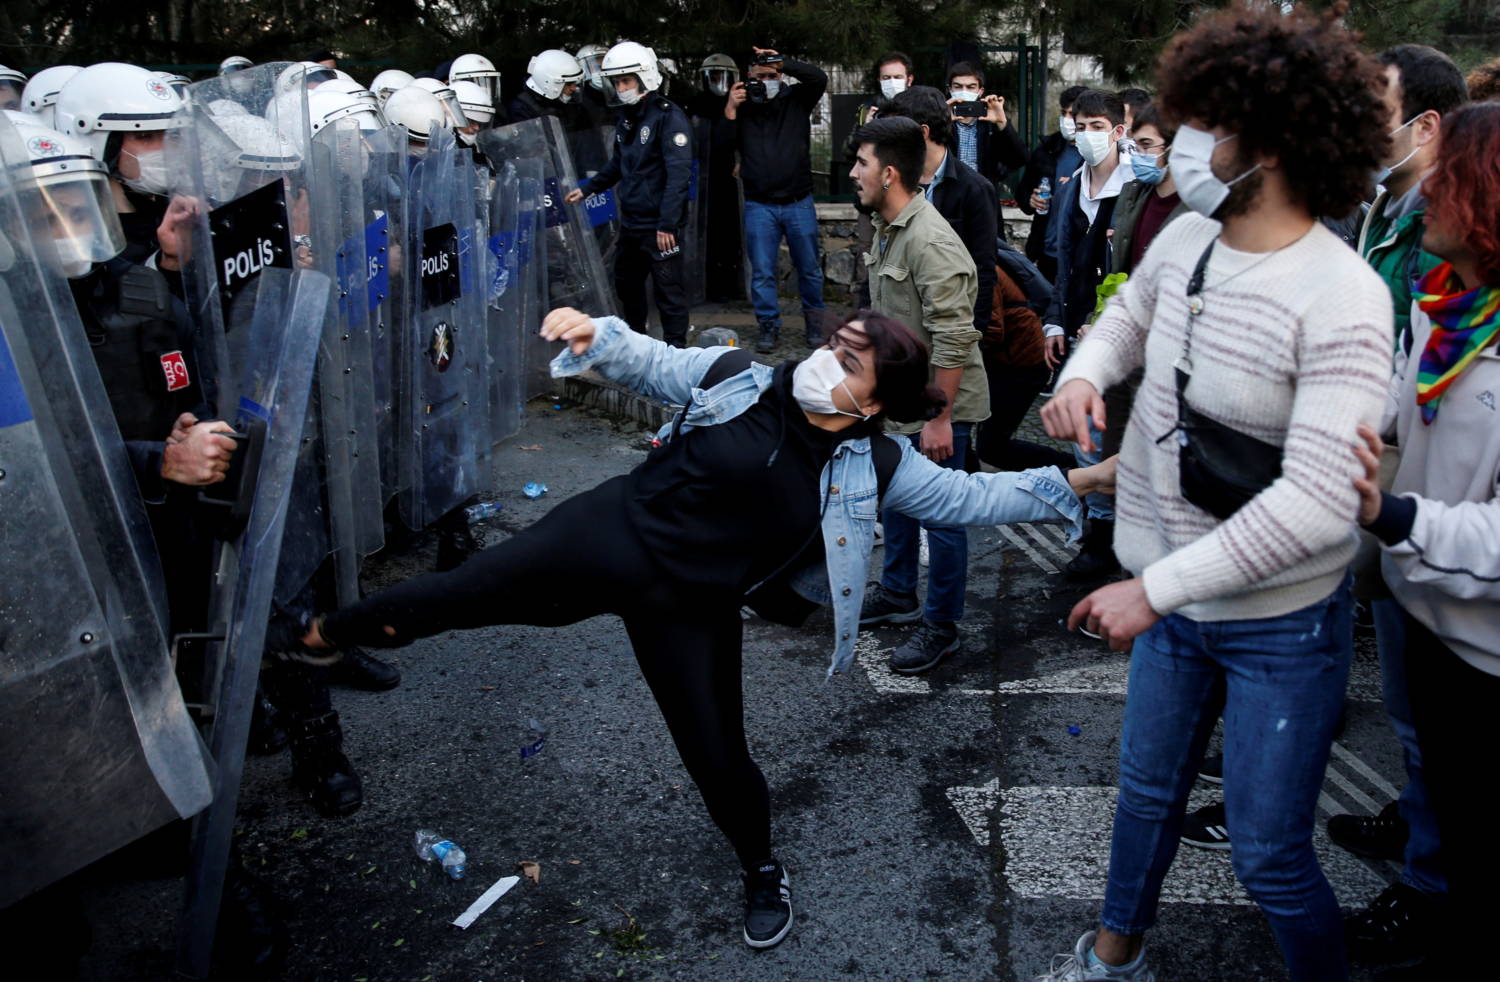 Η τουρκική αστυνομία συγκρούστηκε με φοιτητές που διαμαρτύρονταν για τον επικεφαλής του πανεπιστημίου που είχε διορίσει ο Ερντογάν